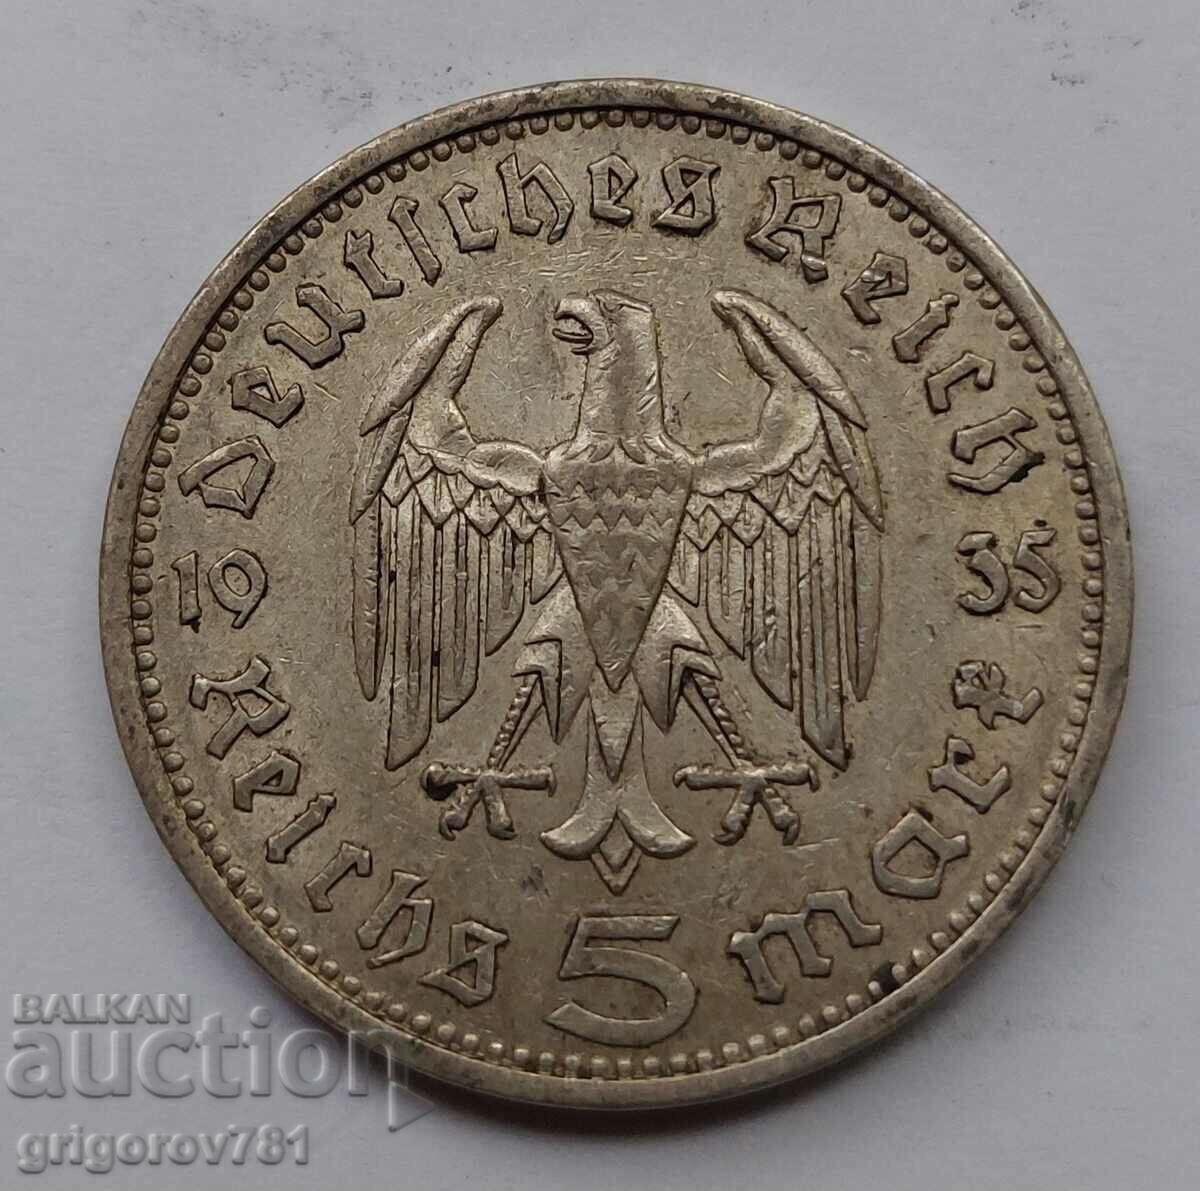 5 Mark Silver Γερμανία 1935 III Reich Silver Coin #92